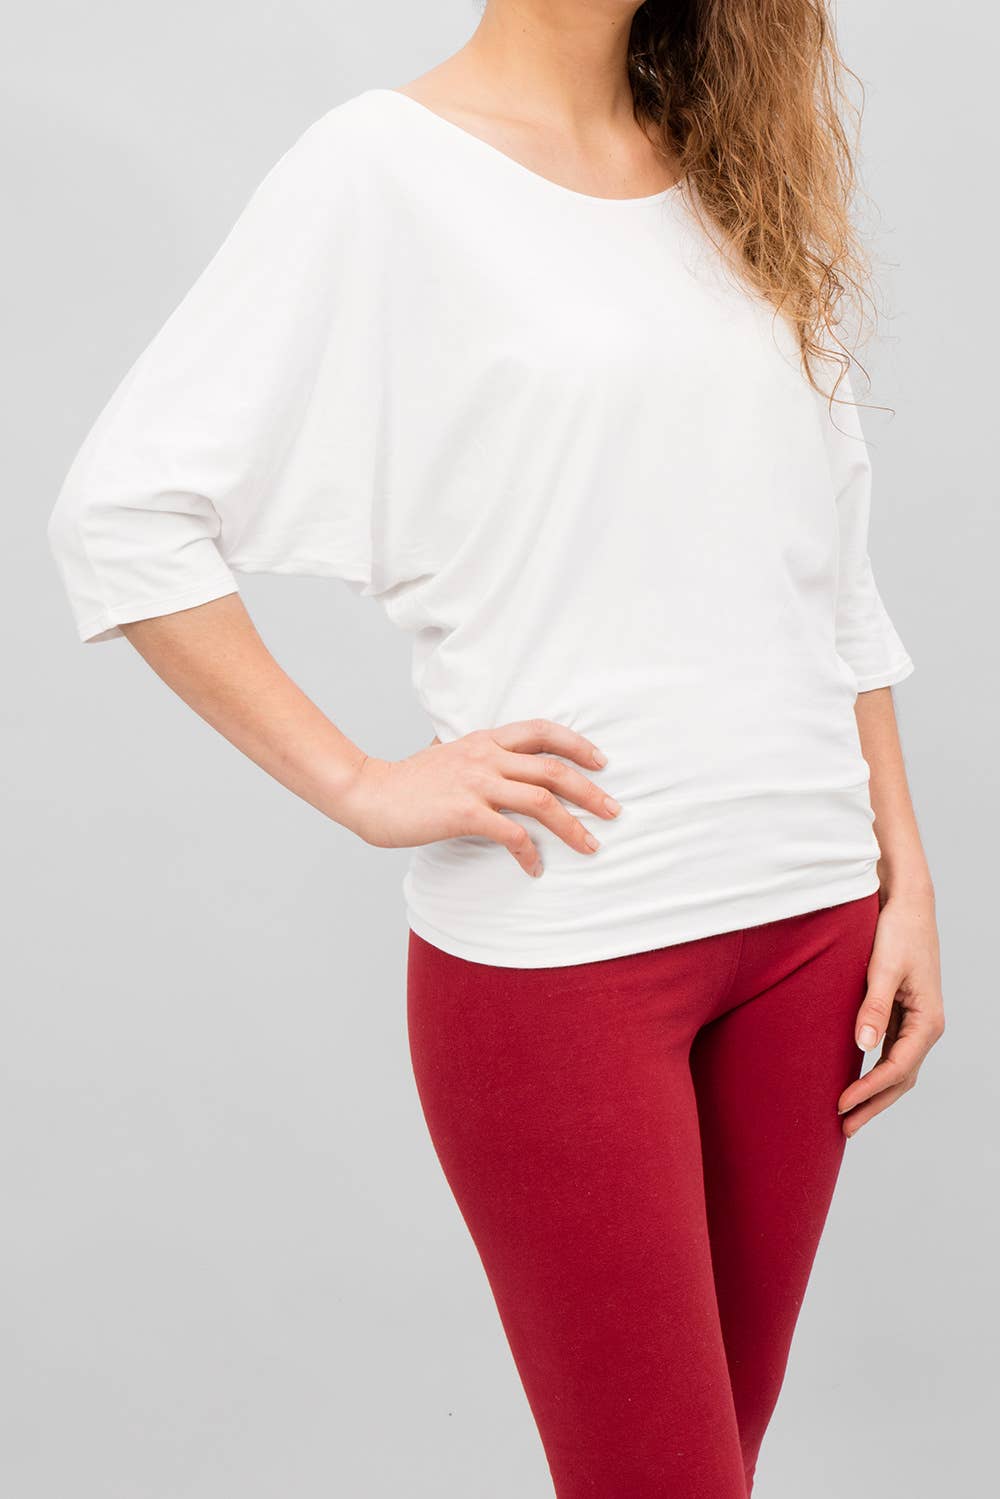 Siri yoga shirt - White